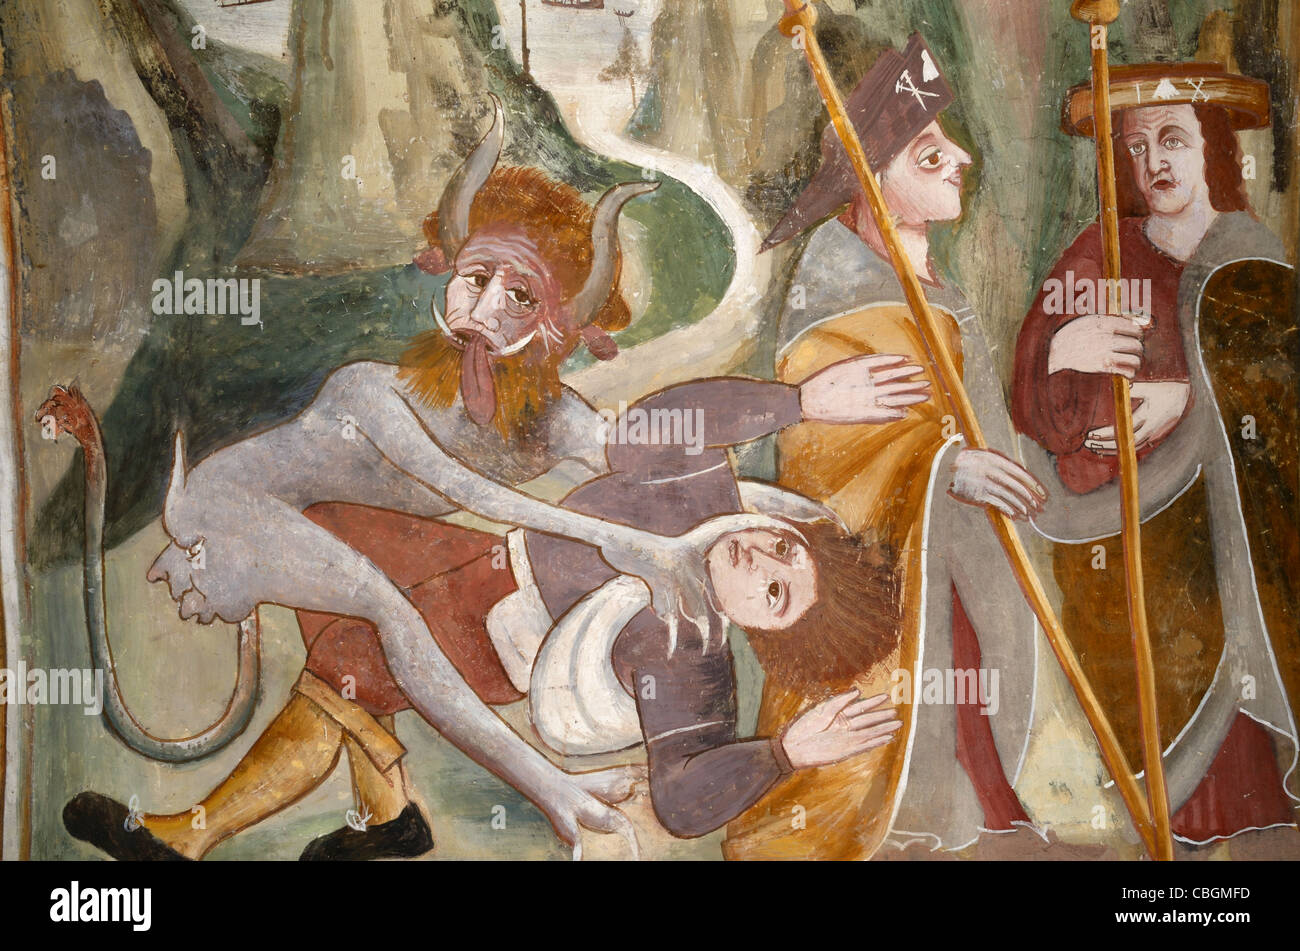 Pèlerins chrétiens attaqués par le diable alors qu'ils sont sur le mur de pèlerinage peinture ou Fresco, Chapelle de Saint Bernard et Saint Sébastien (1510), Roure, France Banque D'Images